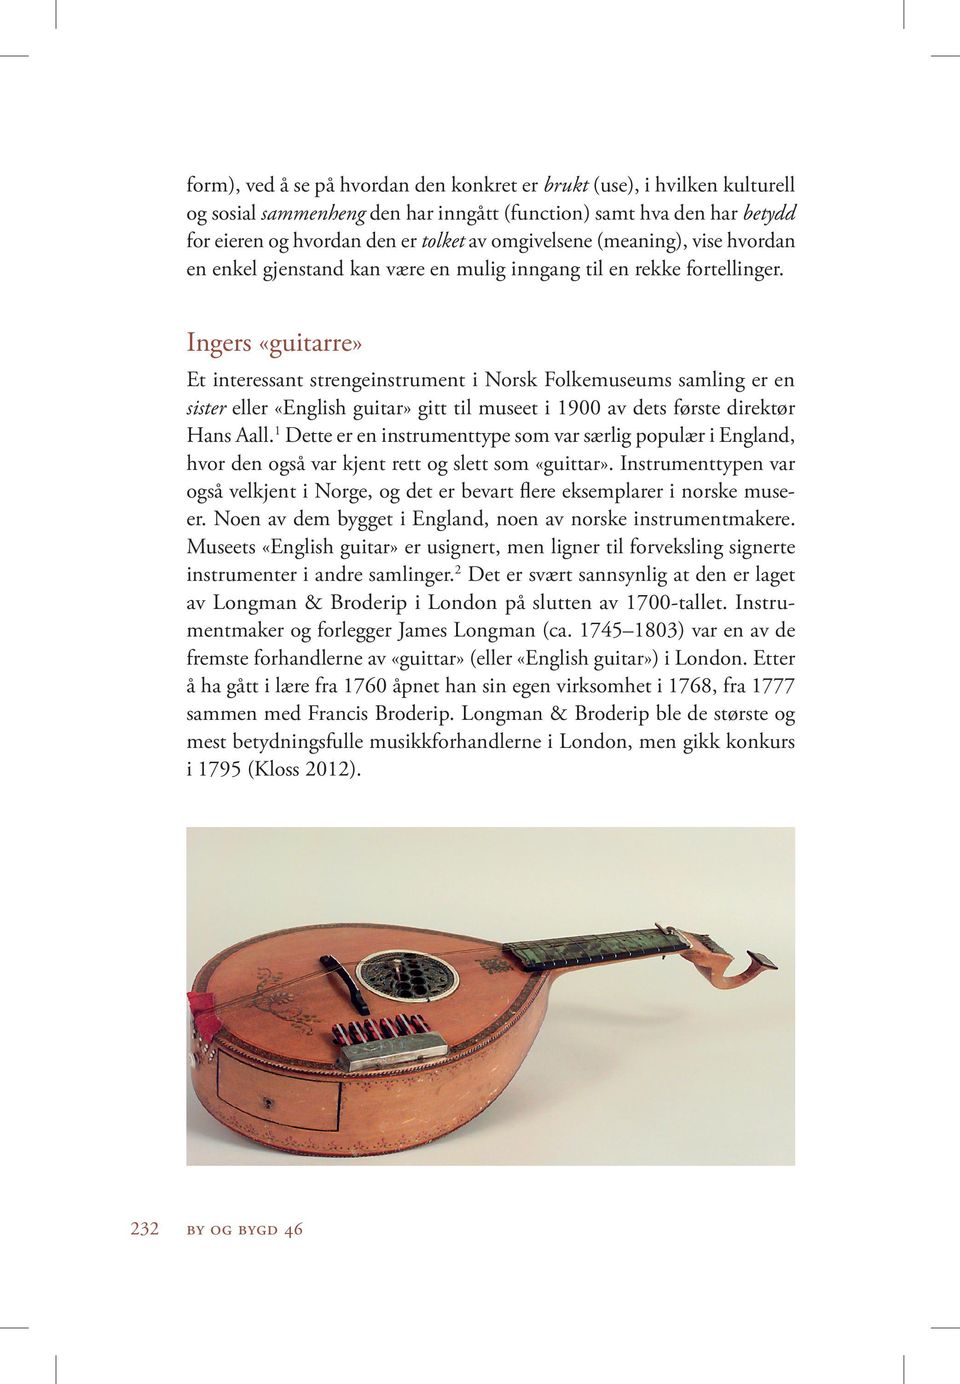 Ingers «guitarre» Et interessant strengeinstrument i Norsk Folkemuseums samling er en sister eller «English guitar» gitt til museet i 1900 av dets første direktør Hans Aall.